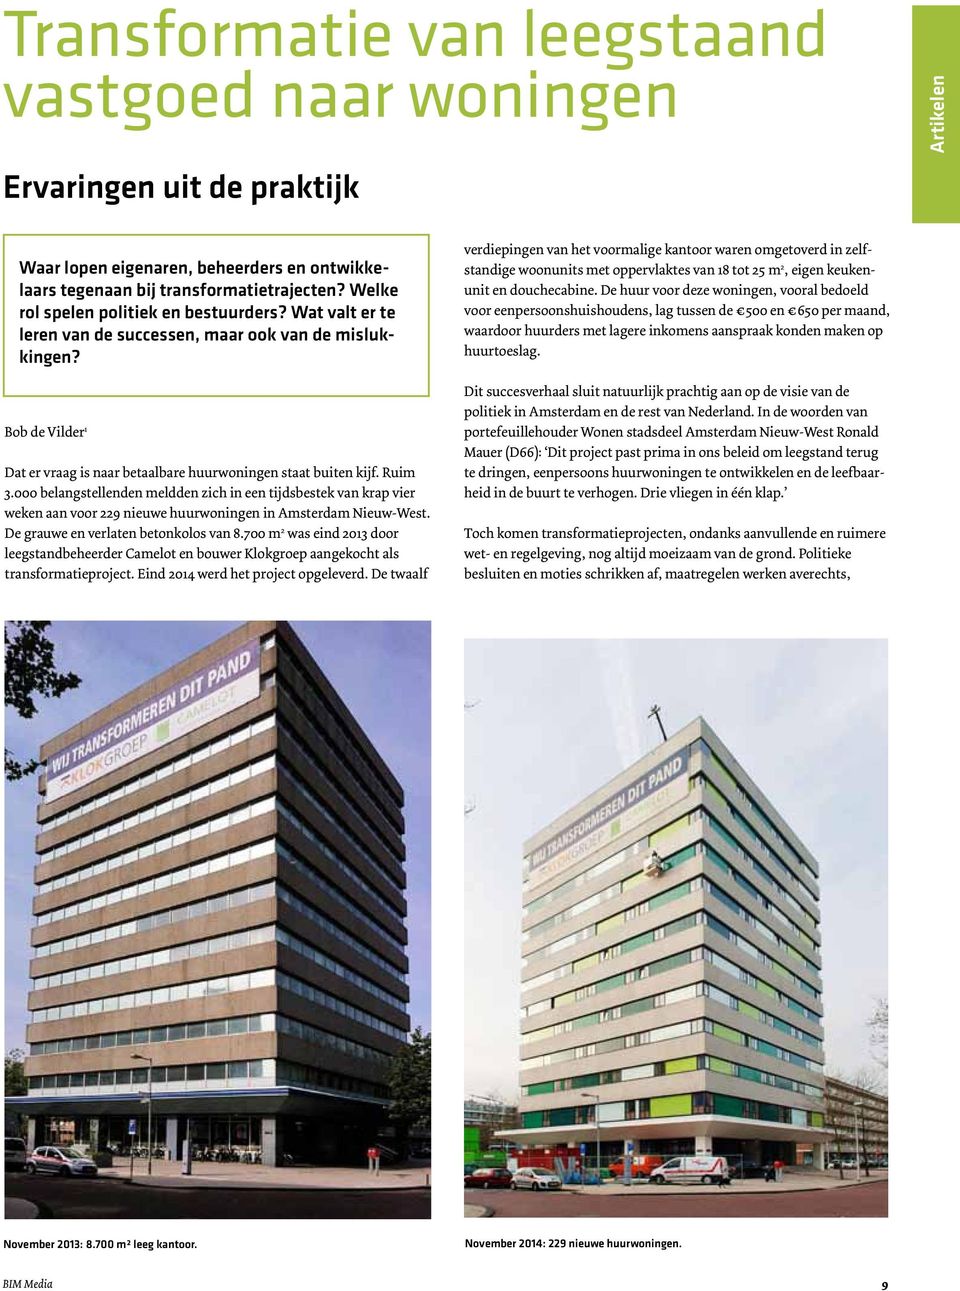 000 belangstellenden meldden zich in een tijdsbestek van krap vier weken aan voor 229 nieuwe huurwoningen in Amsterdam Nieuw-West. De grauwe en verlaten betonkolos van 8.